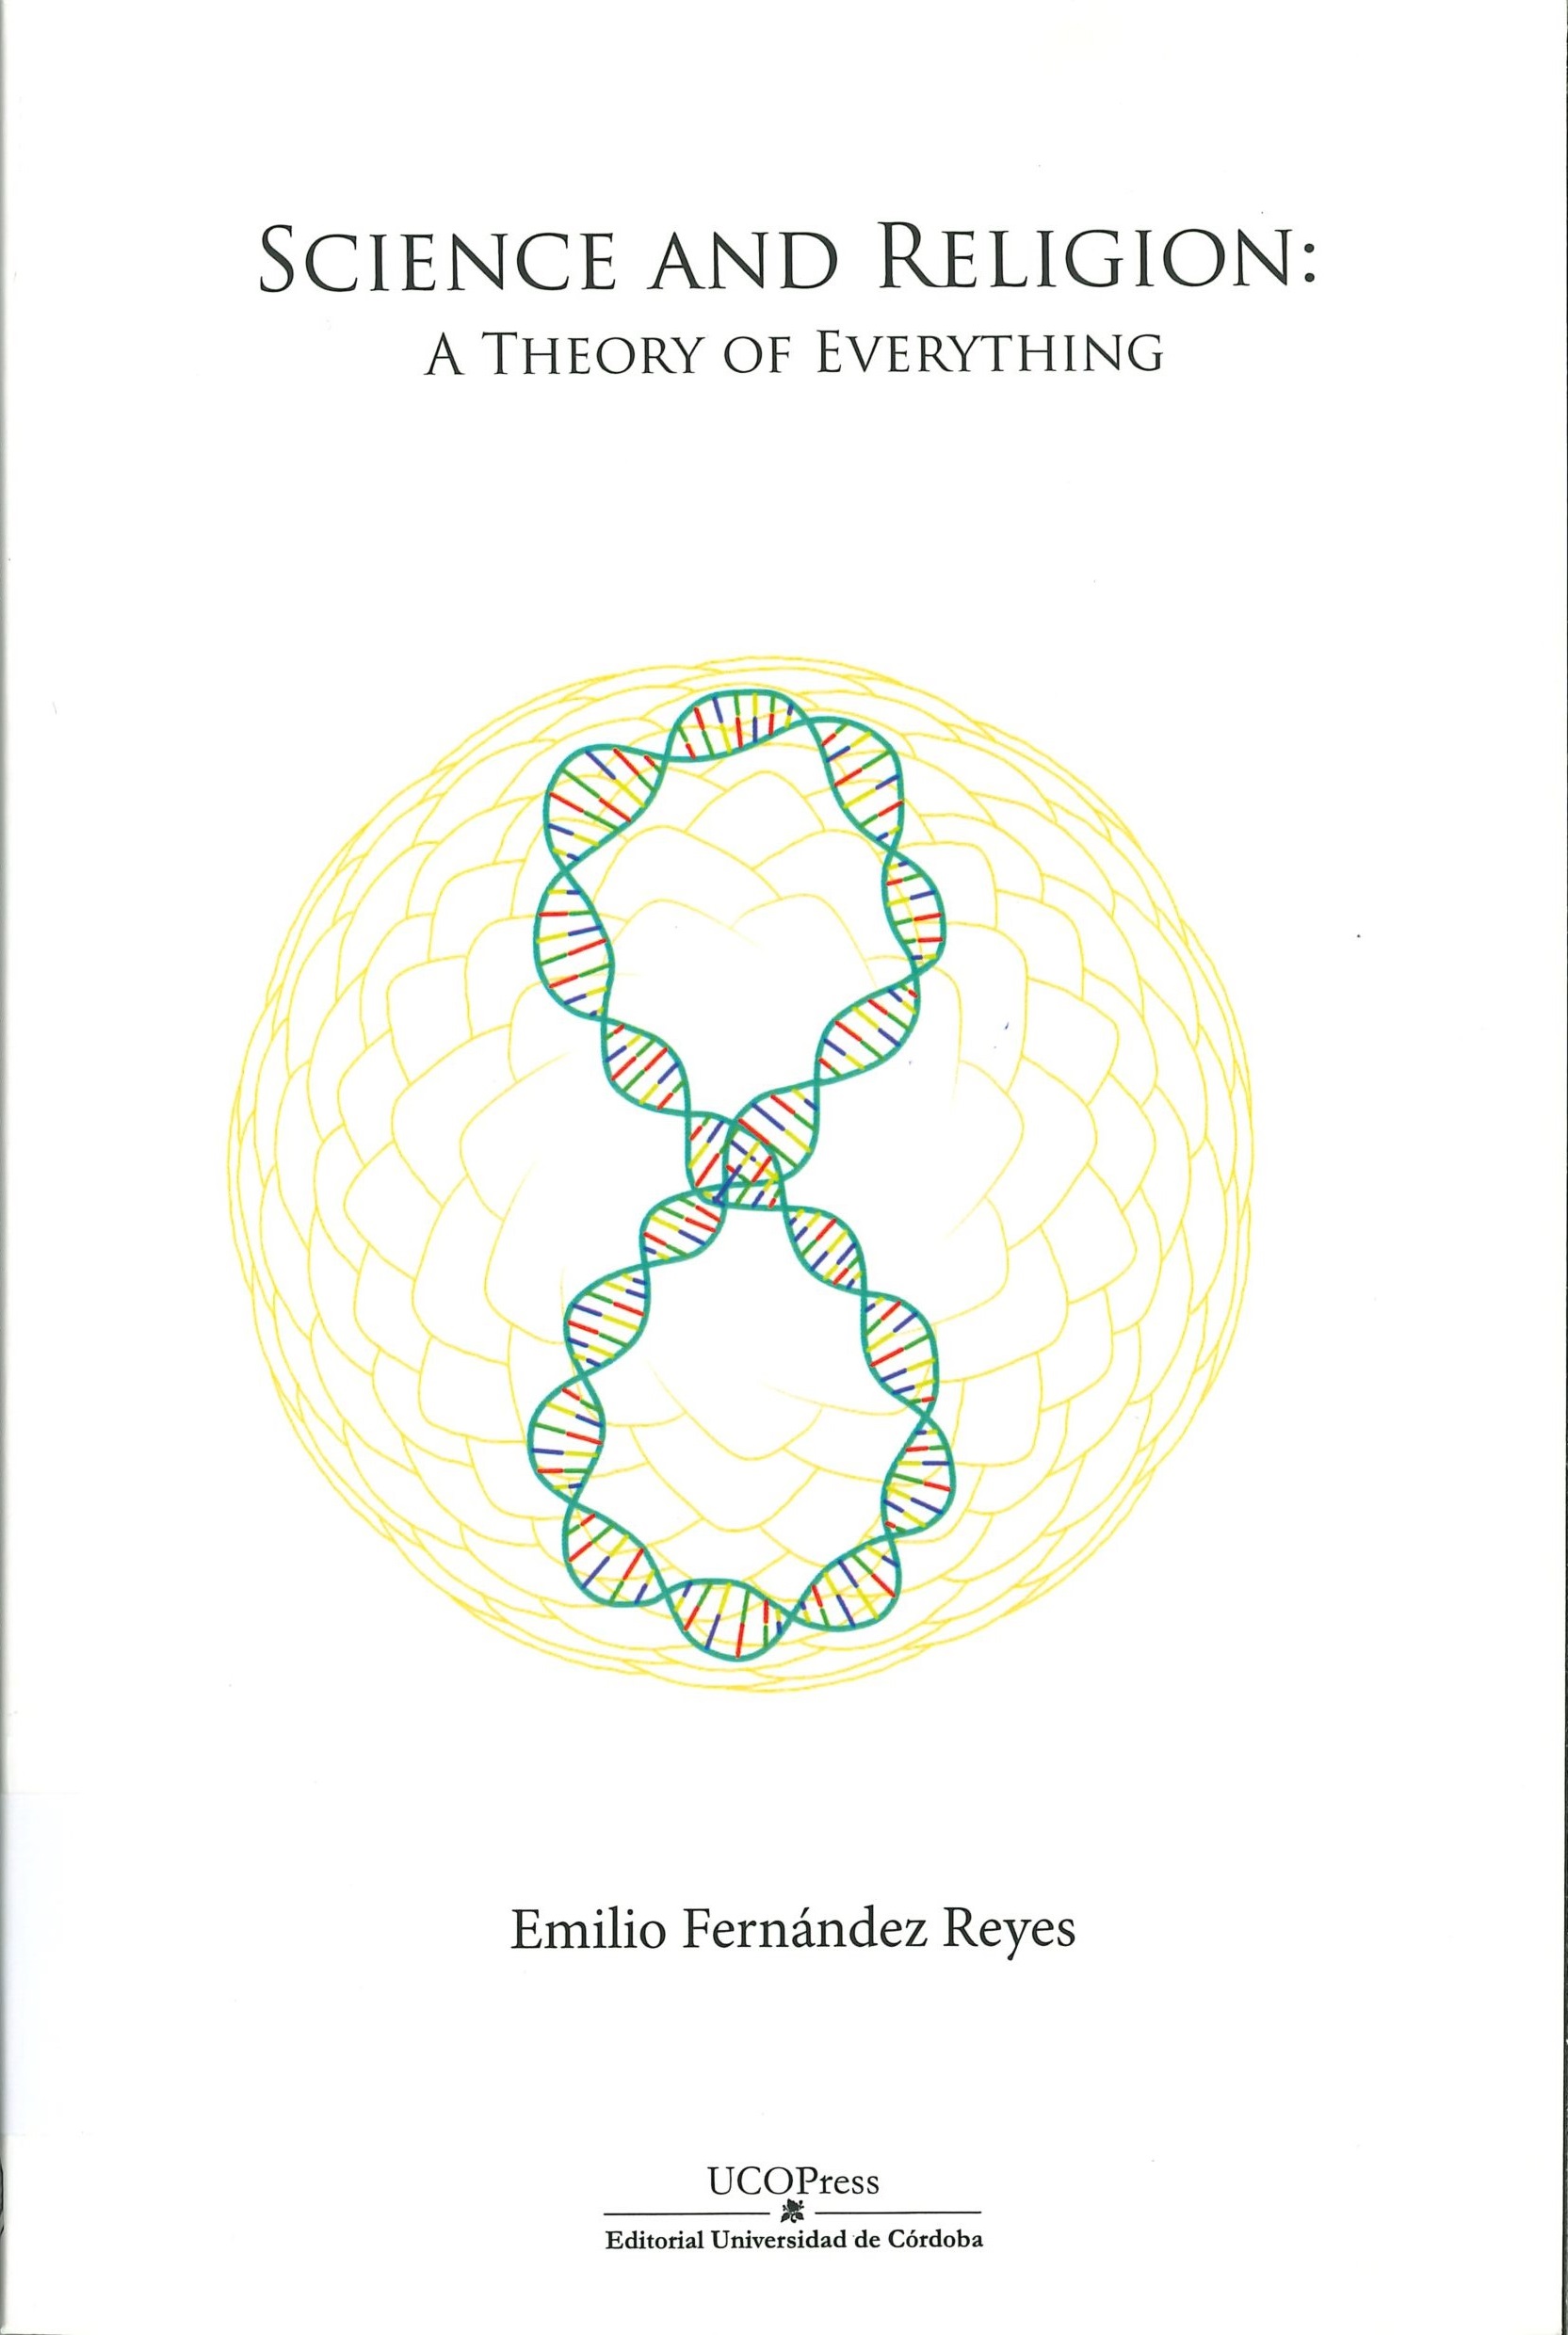 Imagen de portada del libro Science and religion